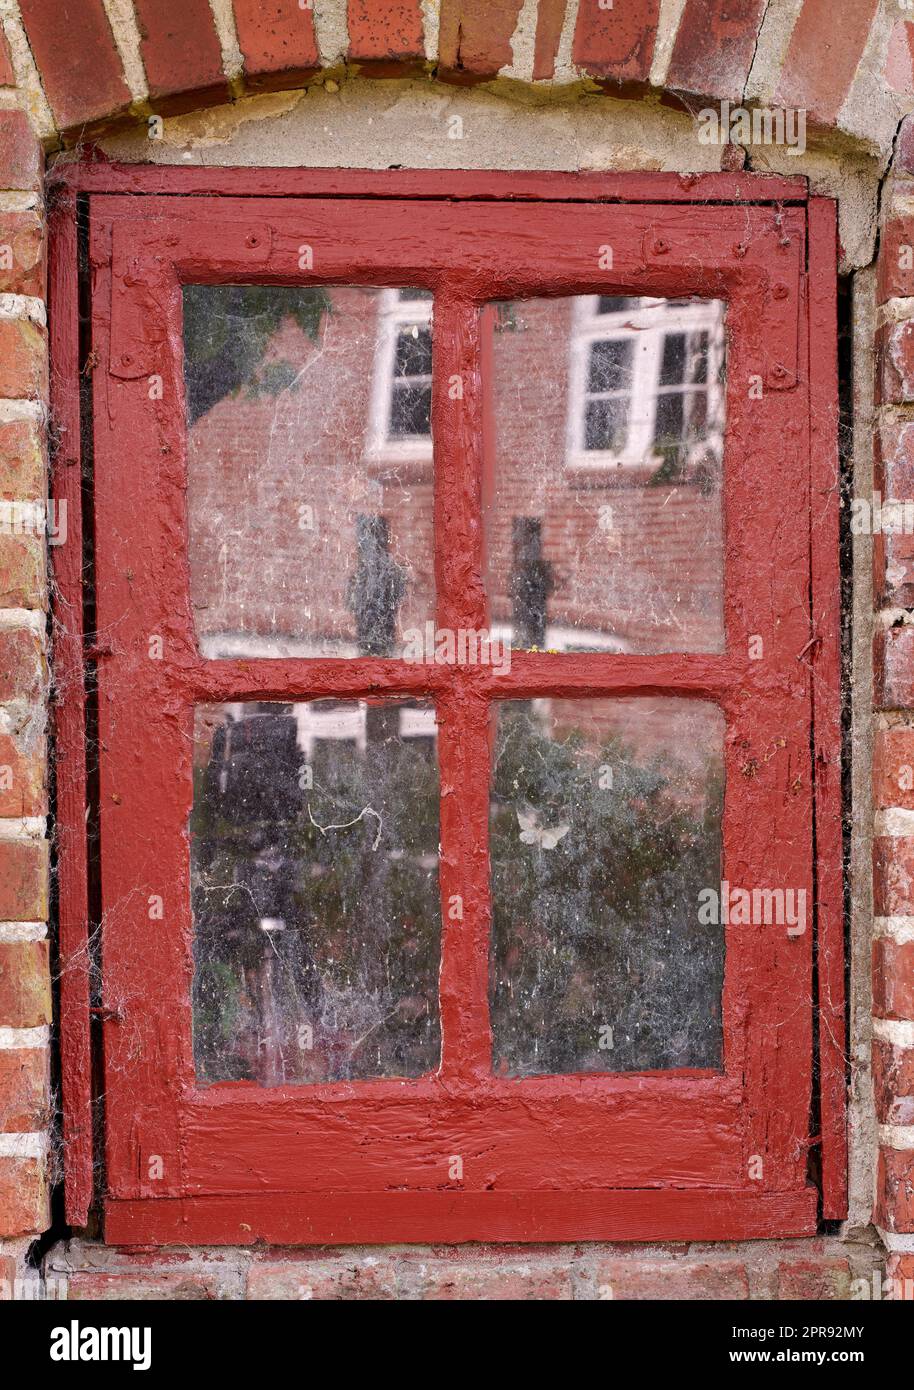 Ein altes, dreckiges Fenster in einem roten Backsteinhaus. Zoomen Sie in das Kaskon mit rotem Holzrahmen auf einem historischen Gebäude mit holpriger Lackstruktur. Makro-Außendetails der Fensterbank in einer traditionellen Stadt Stockfoto